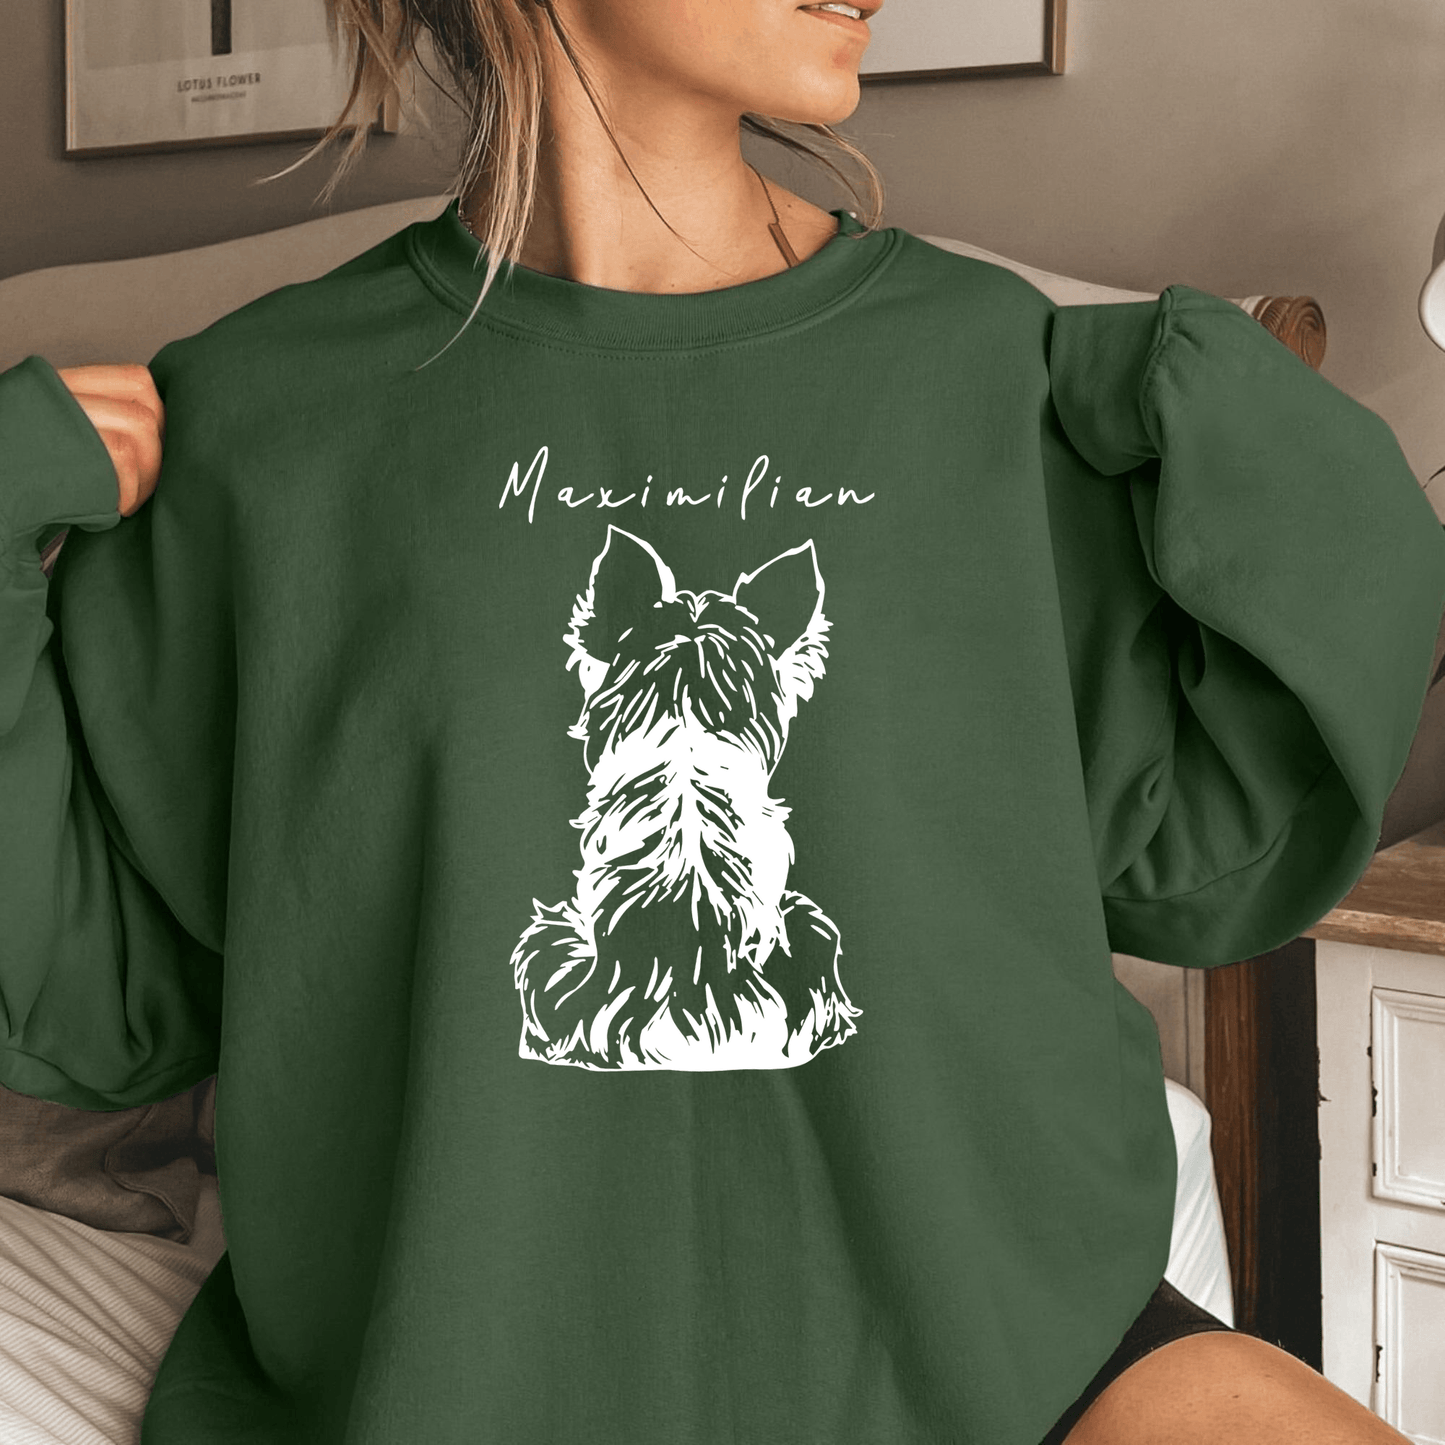 "Mein Lieblingsfell" - Personalisiertes Hundeporträt-Sweatshirt für Haustierliebhaber - GiftHaus